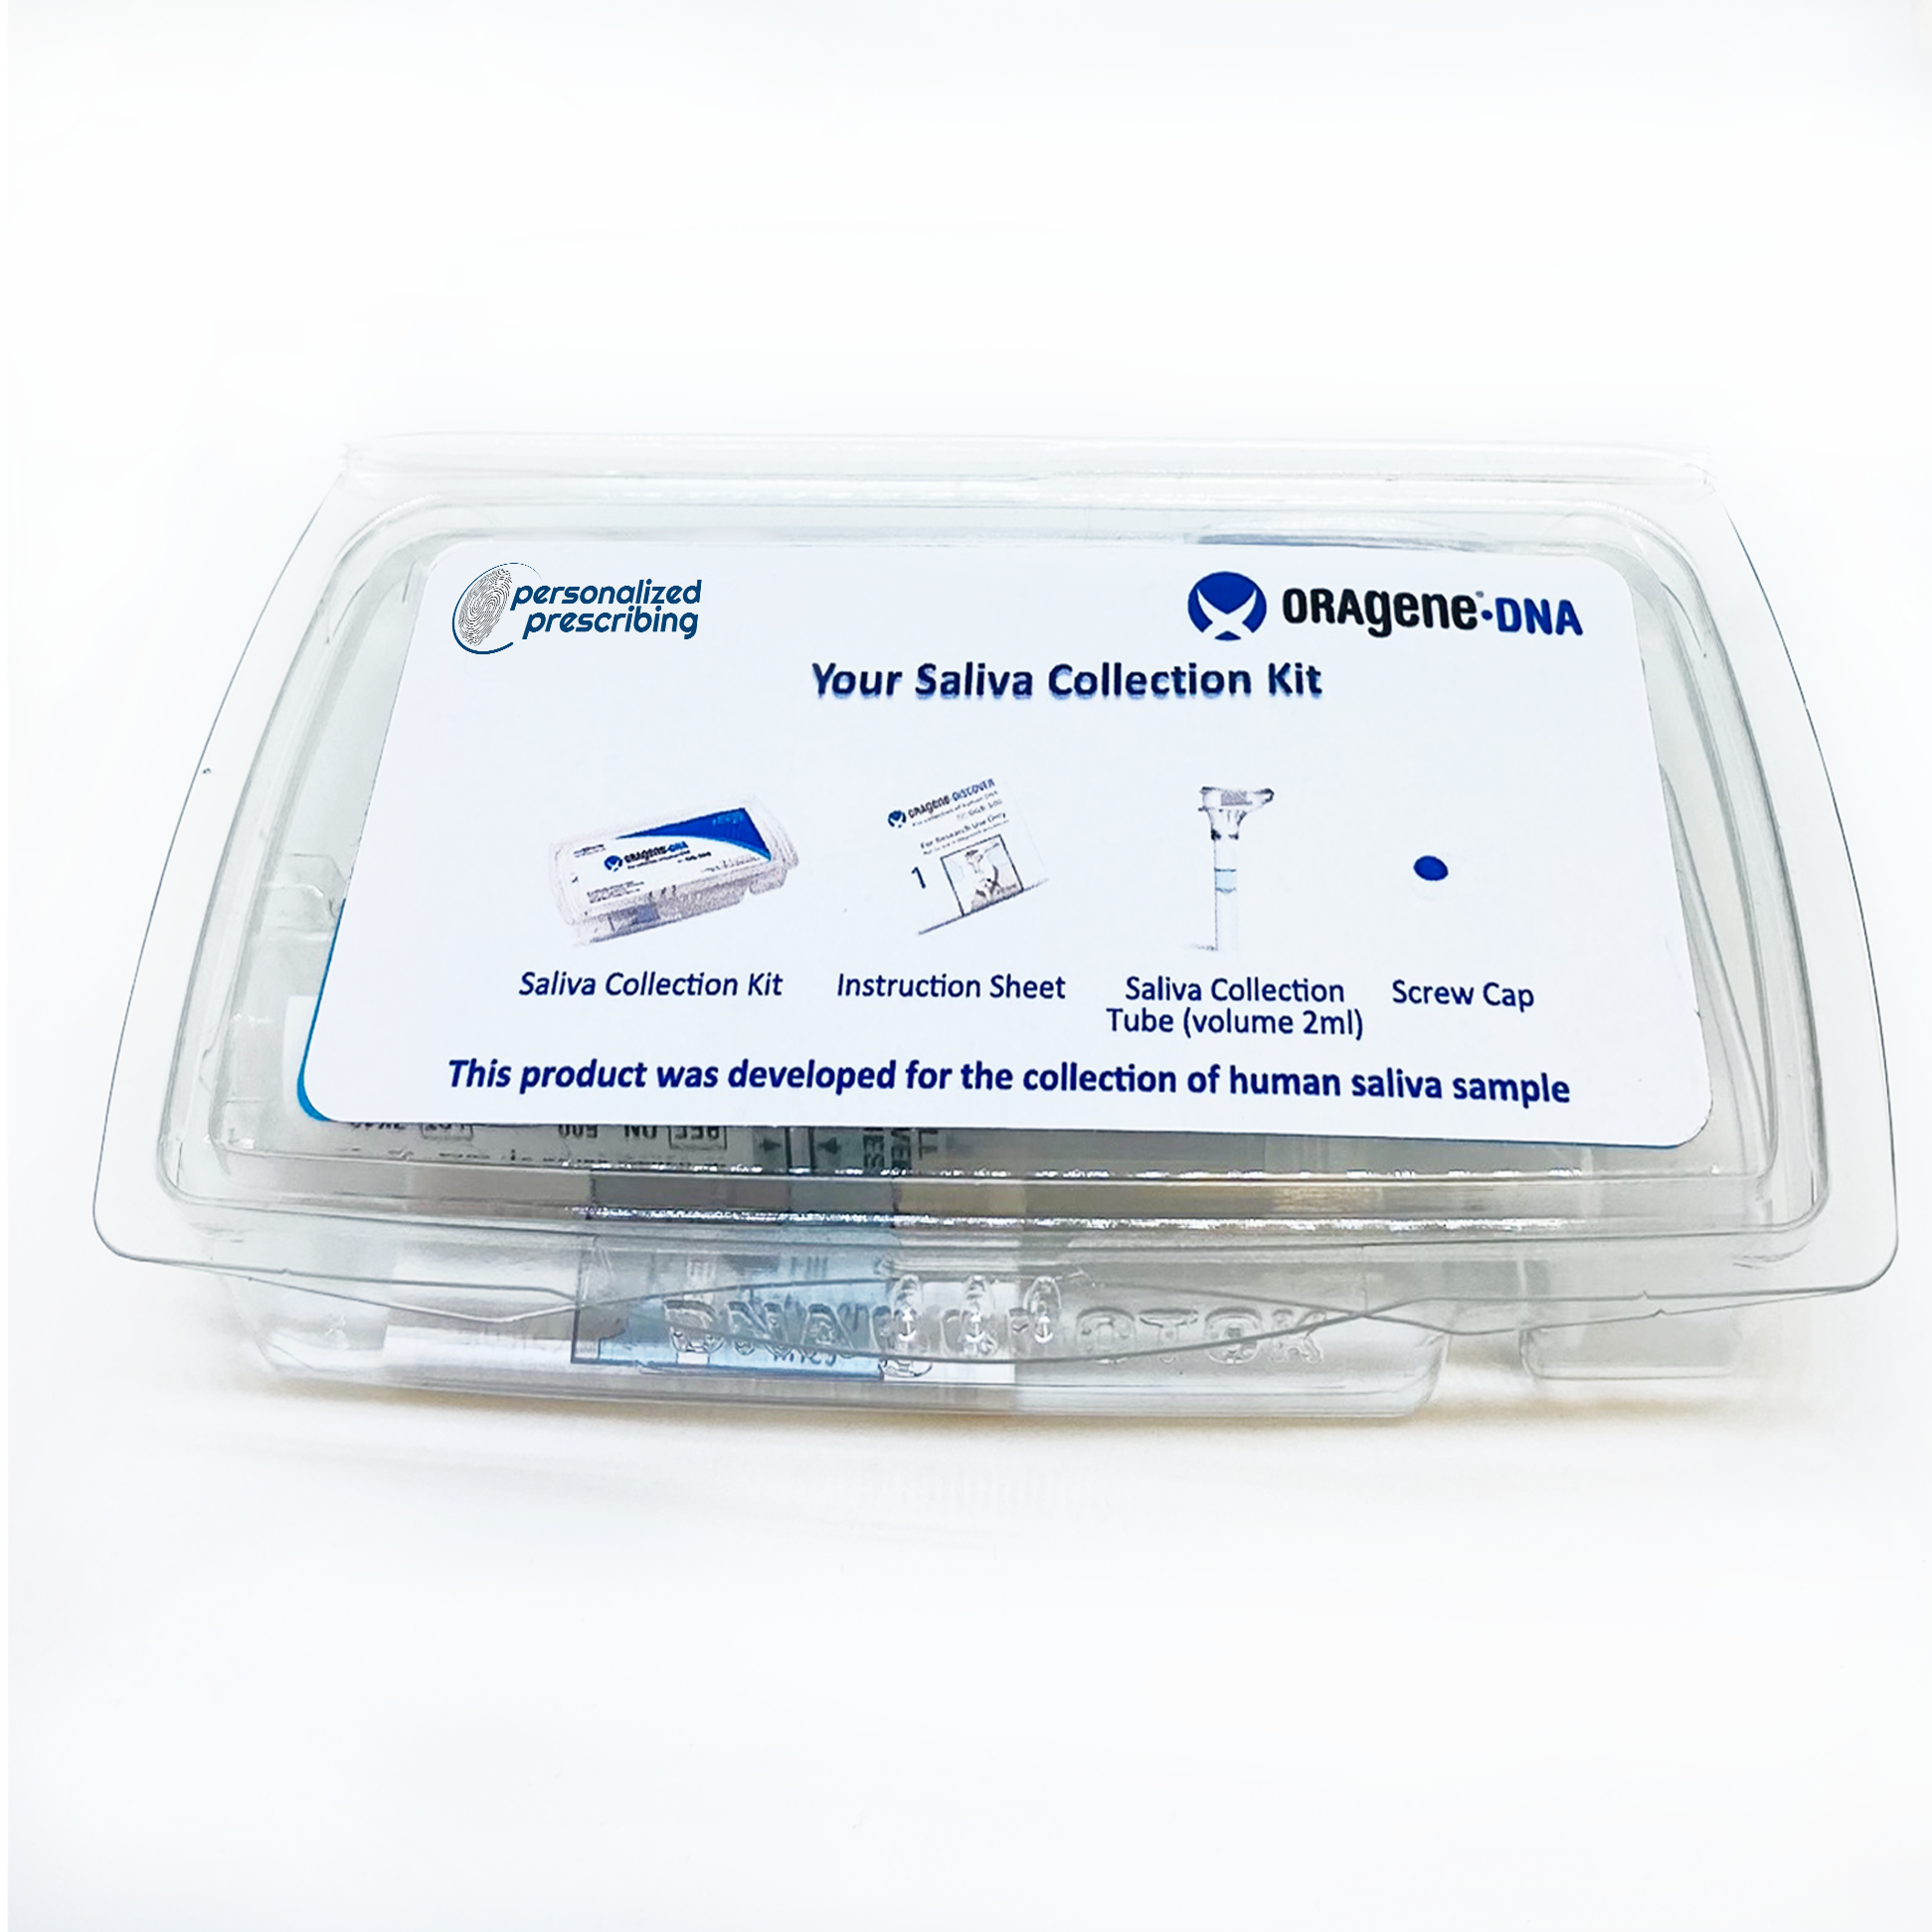 Oragene-DNA Pharmacogenetic testing saliva kit in the box